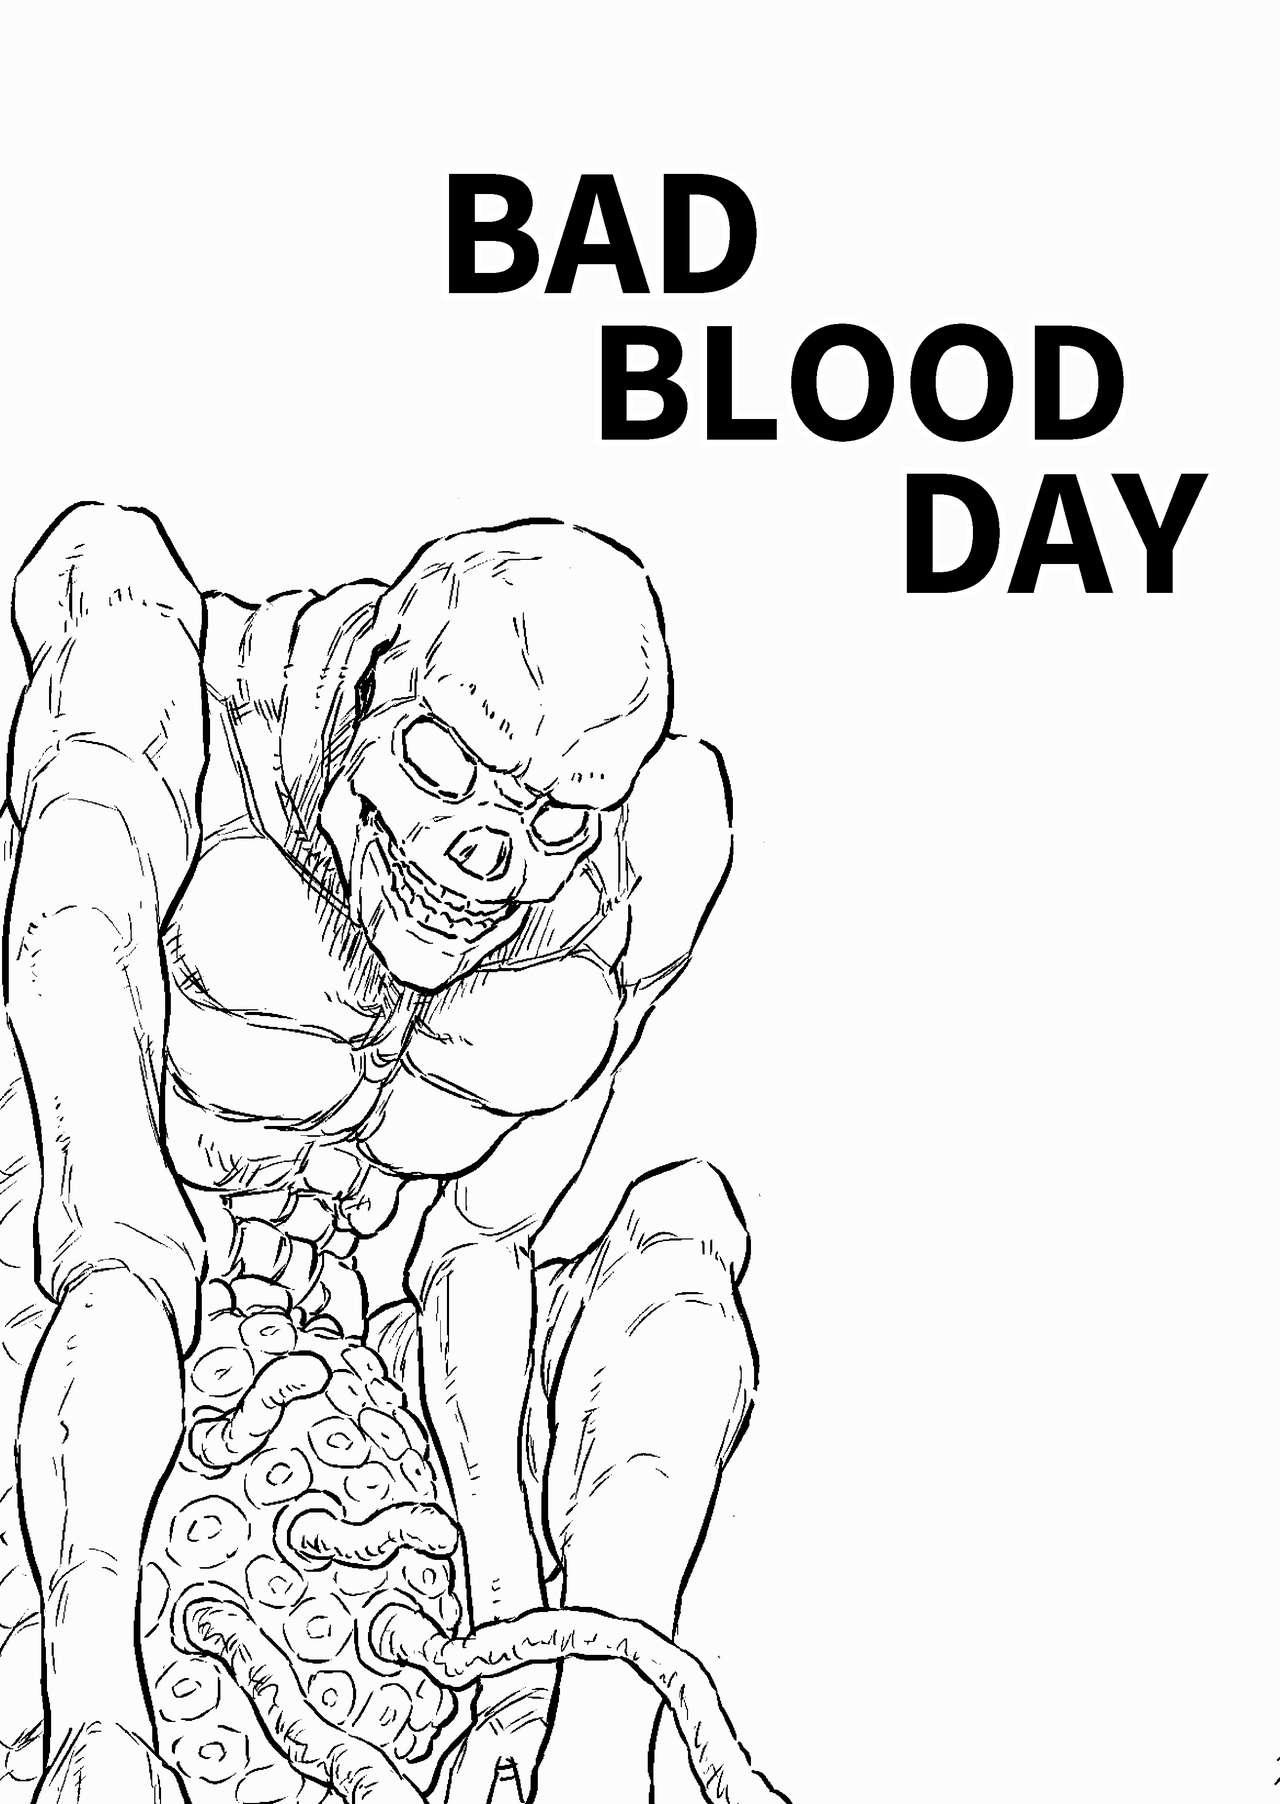 BAD BLOOD DAY『蠢く触手と壊されるヒロインの体』 19